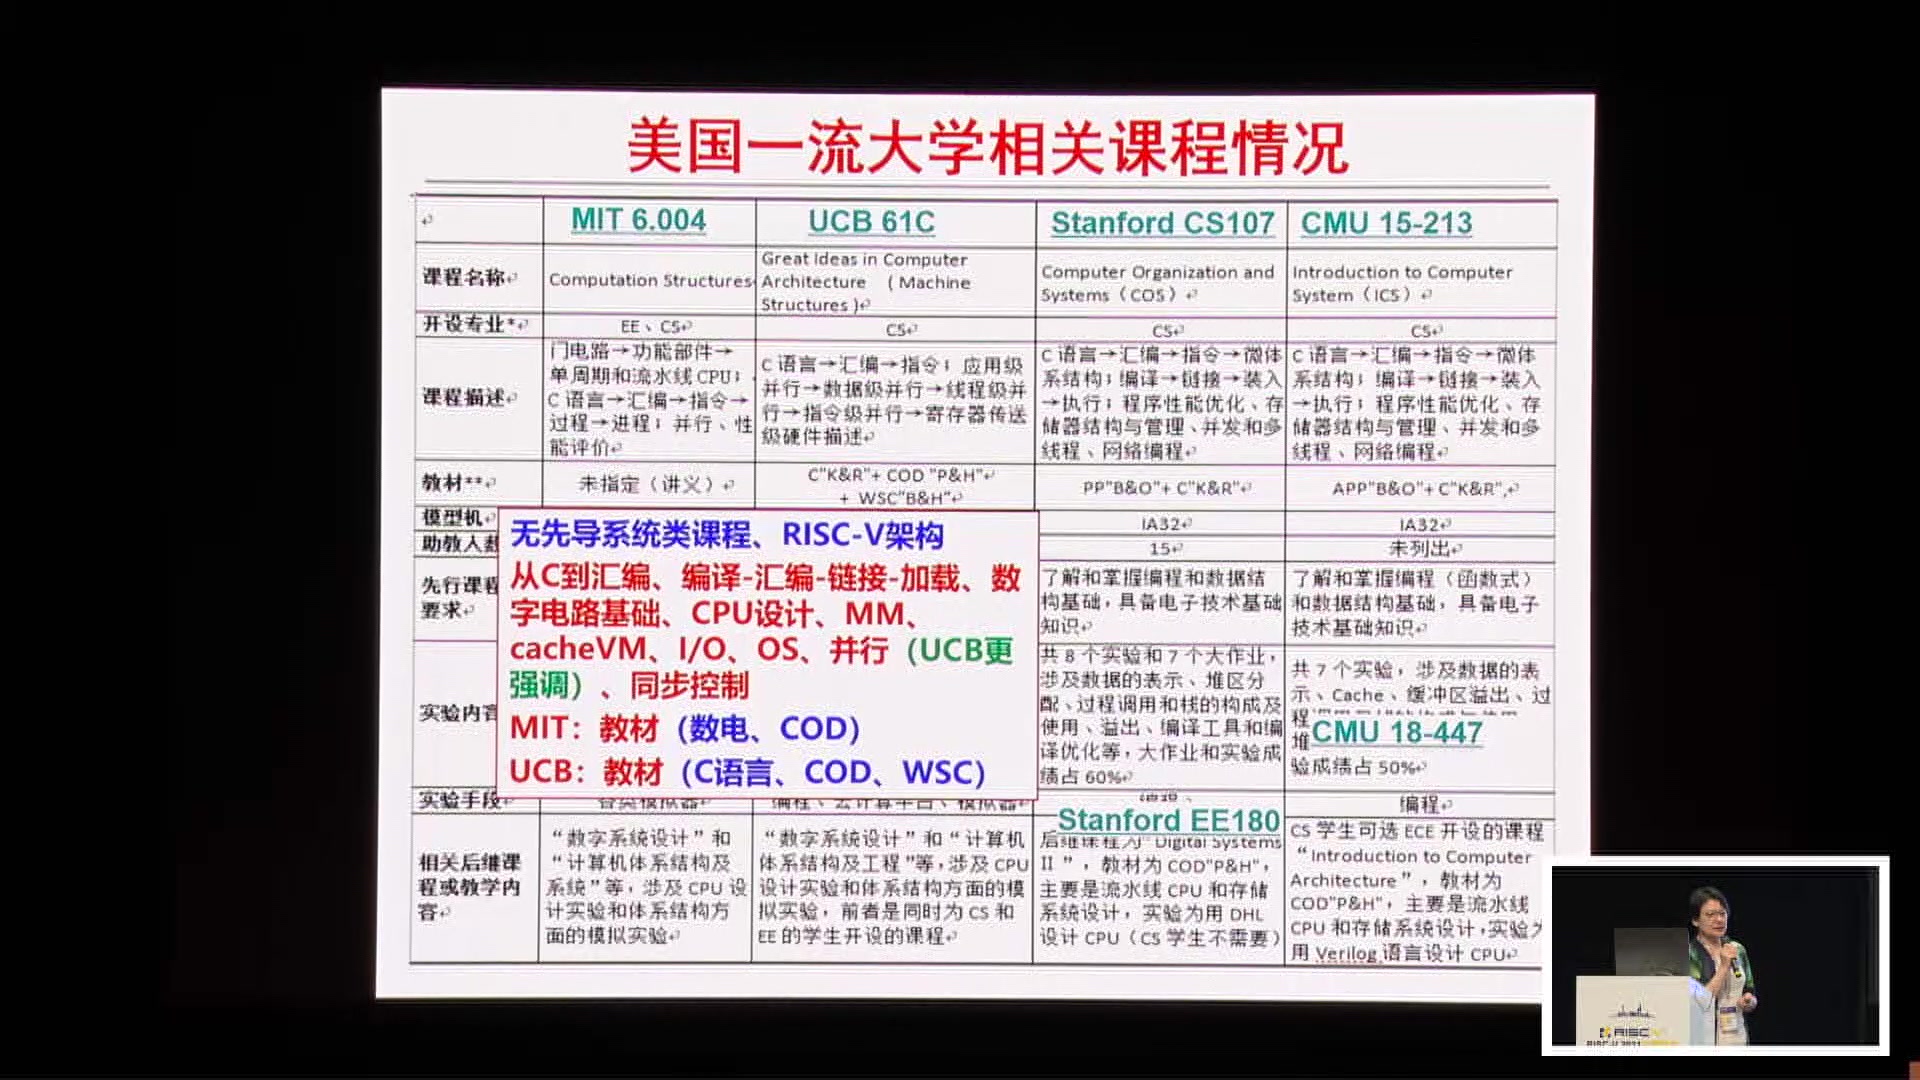 袁春风@南京大学 - 基于RISC-V架构的系统类课程教学现状与思考 - 第一届 RISC-V 中国 - 2